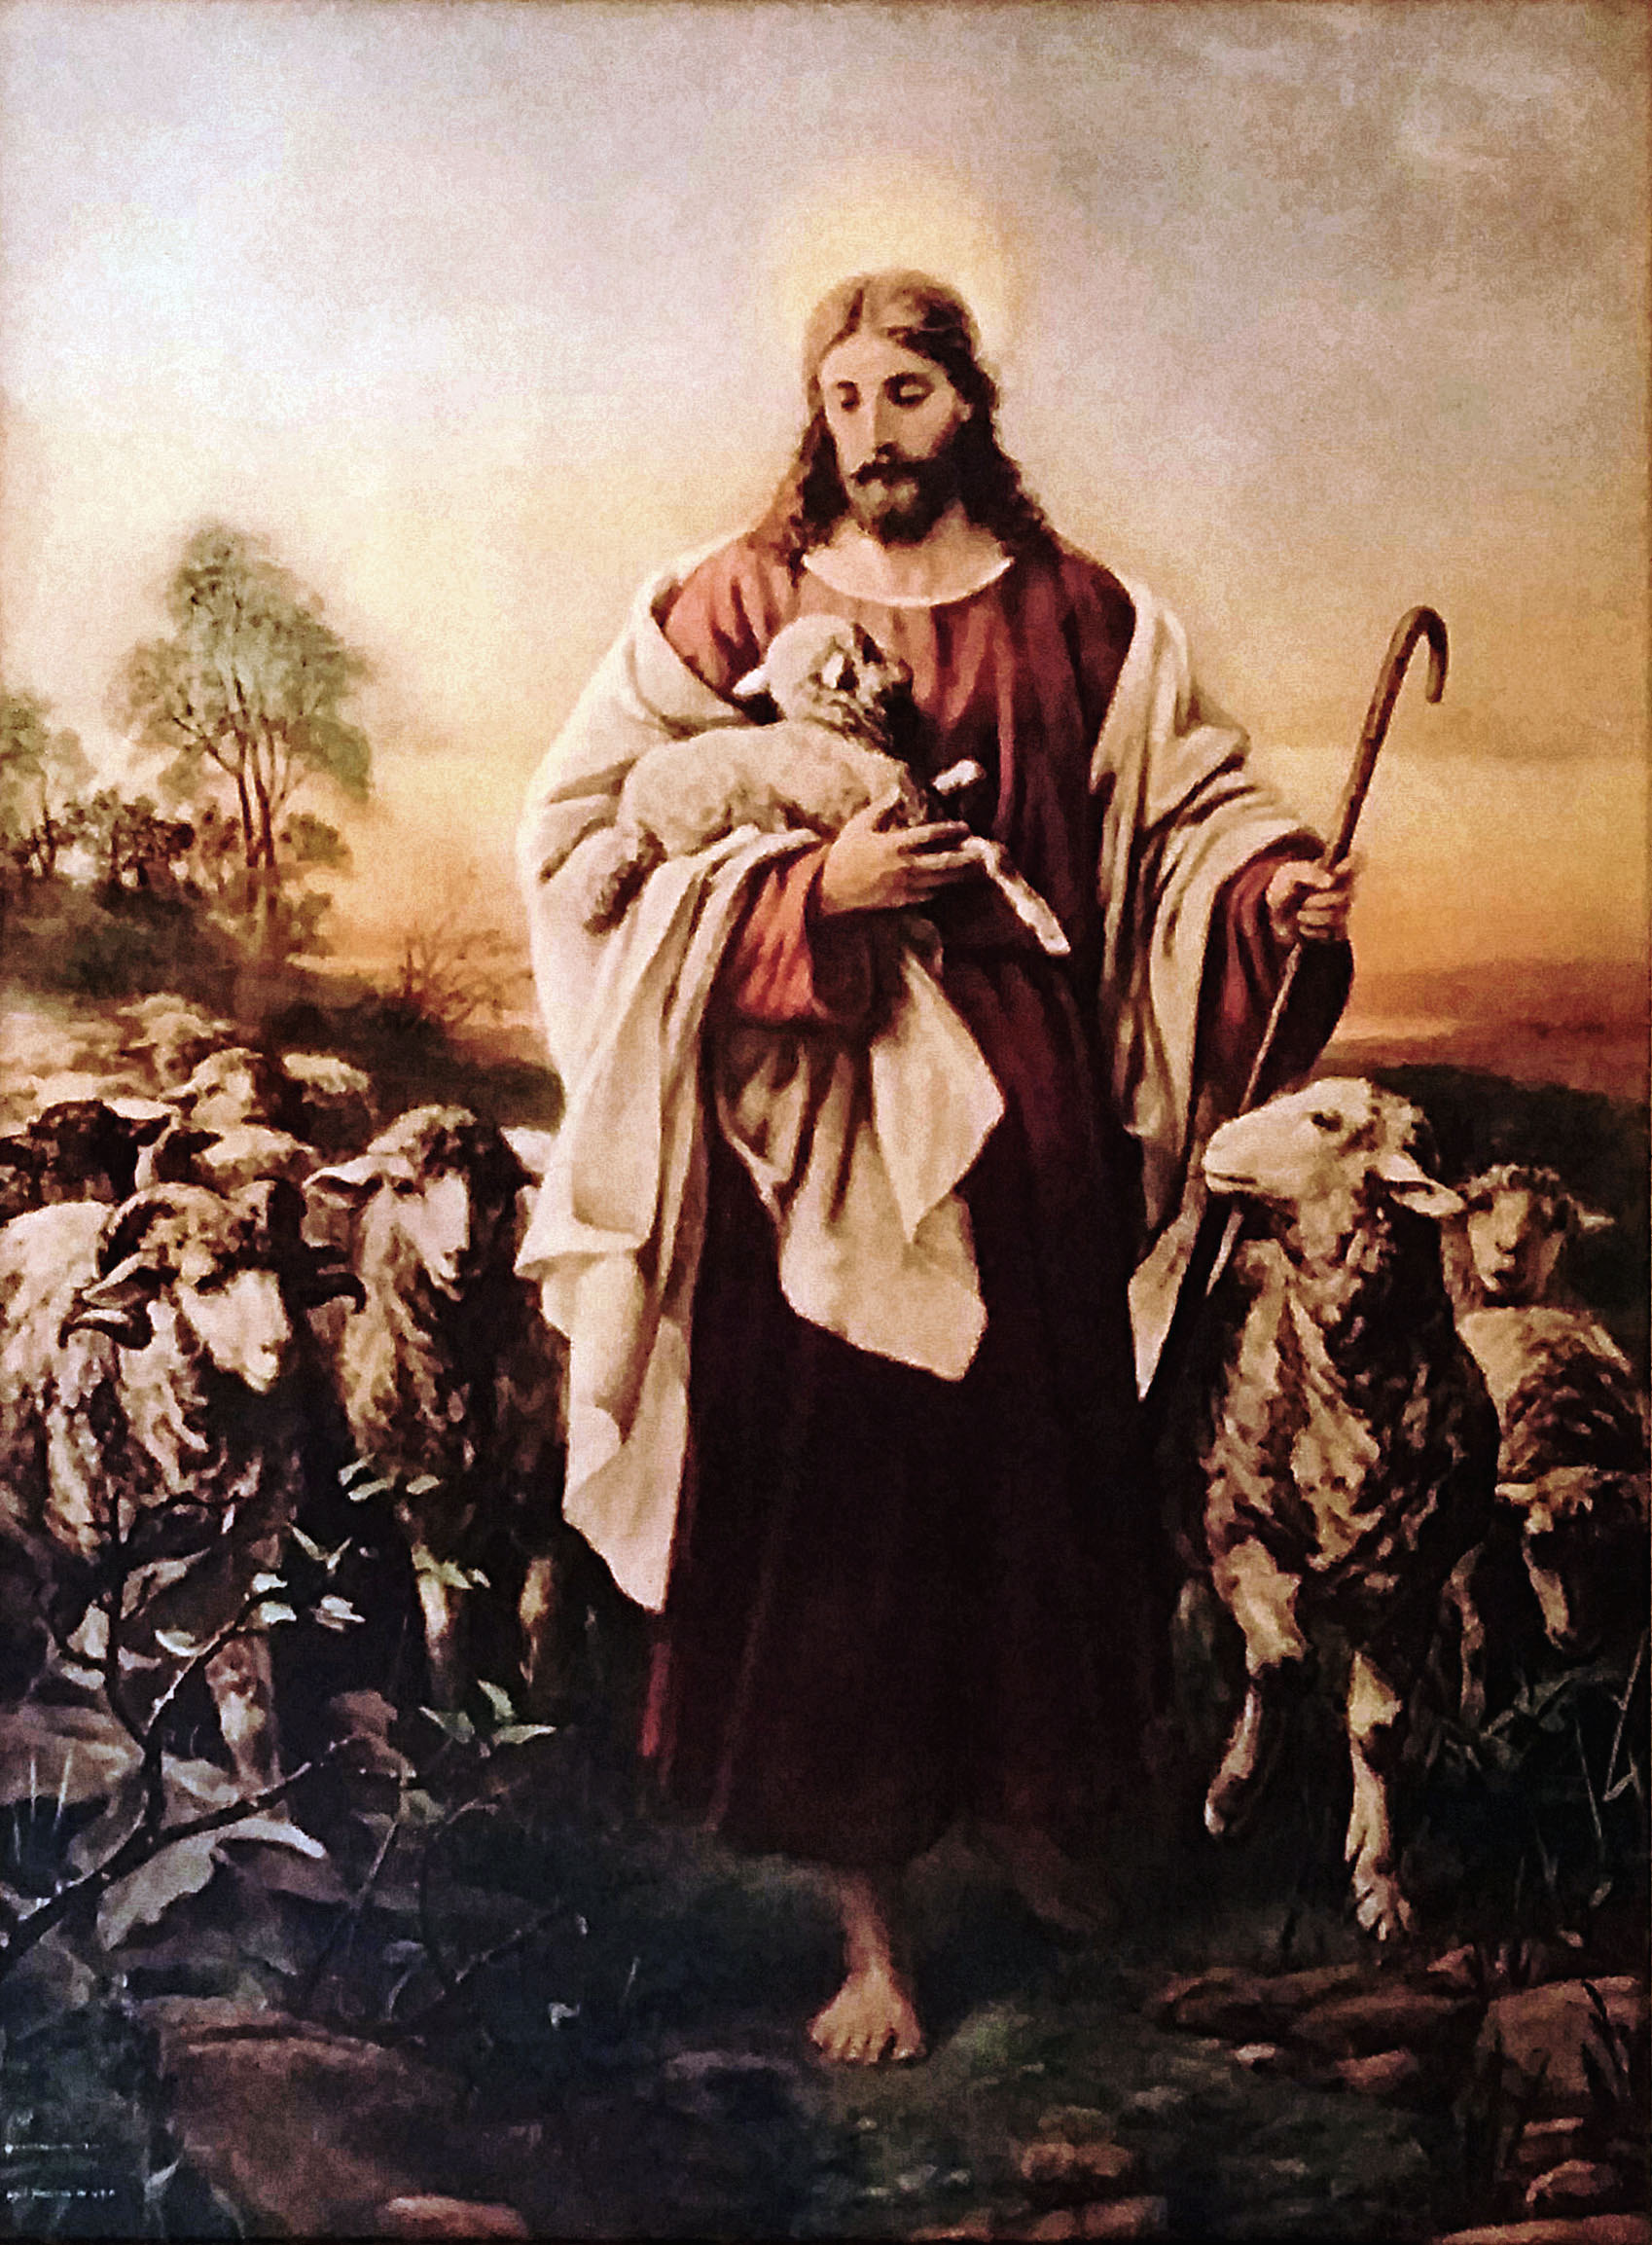 Christ the Good Shepherd artwork